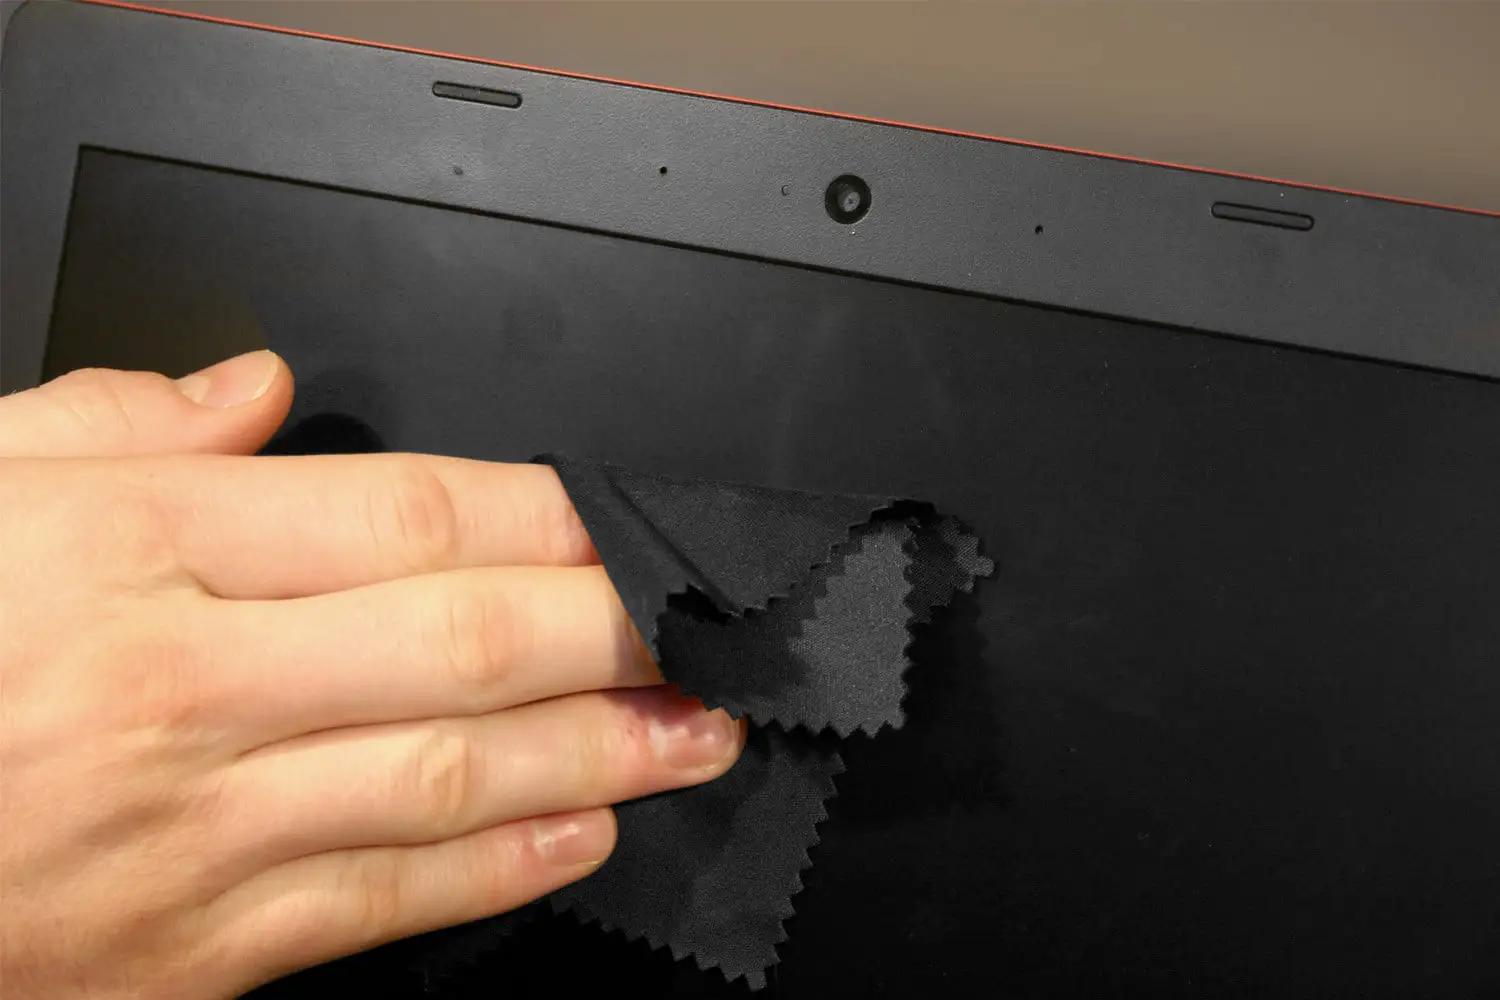 como limpiar la pantalla de la computadora lenovo - Cómo limpiar el teclado de una laptop Lenovo Ideapad